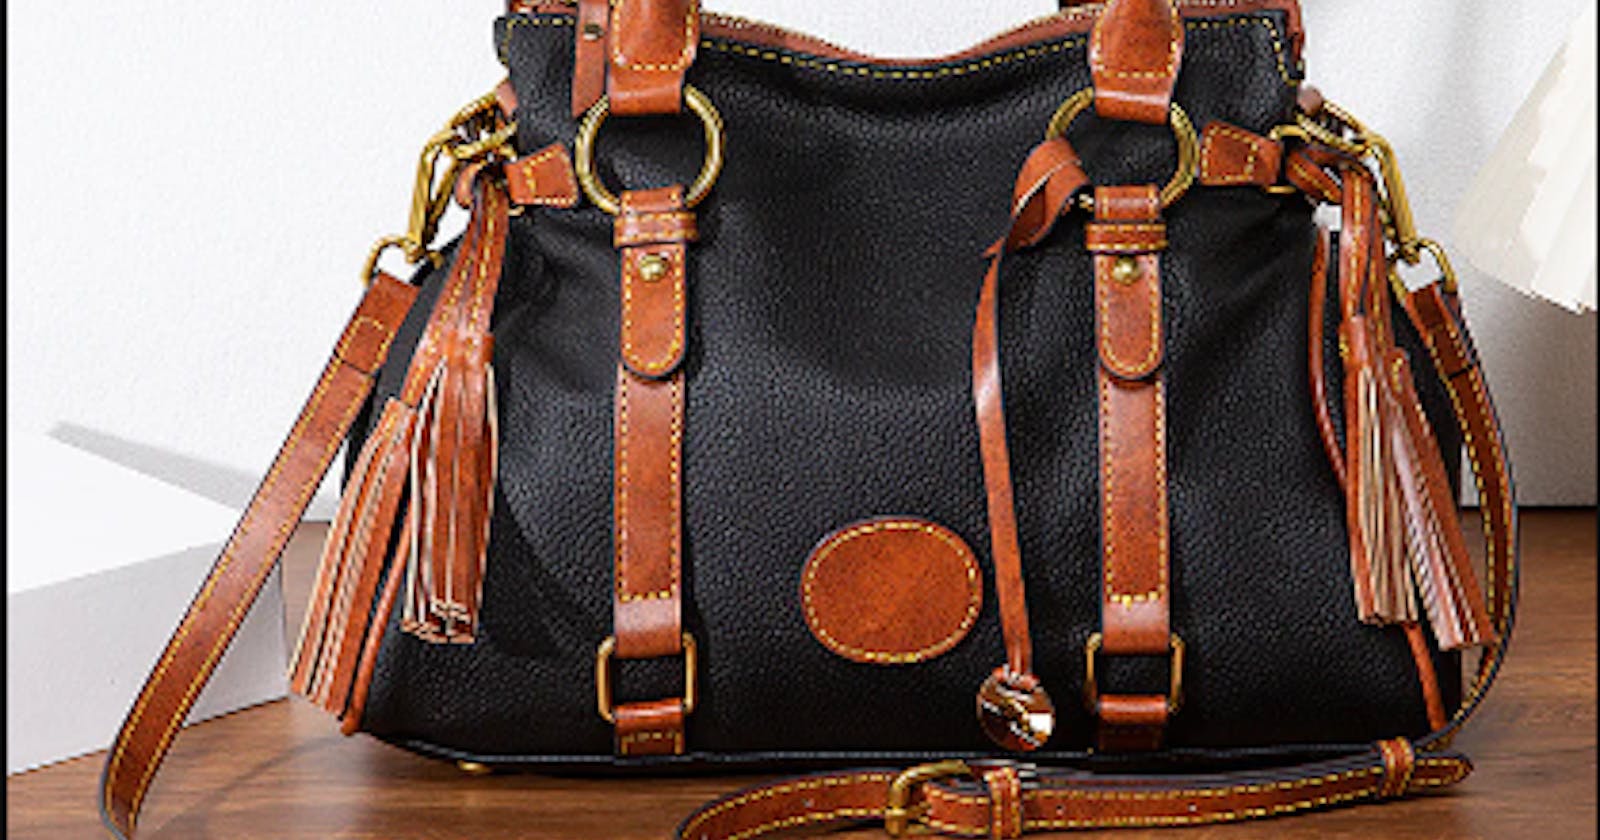 Sellbra Reviews: Is this website an online women's handbag store?